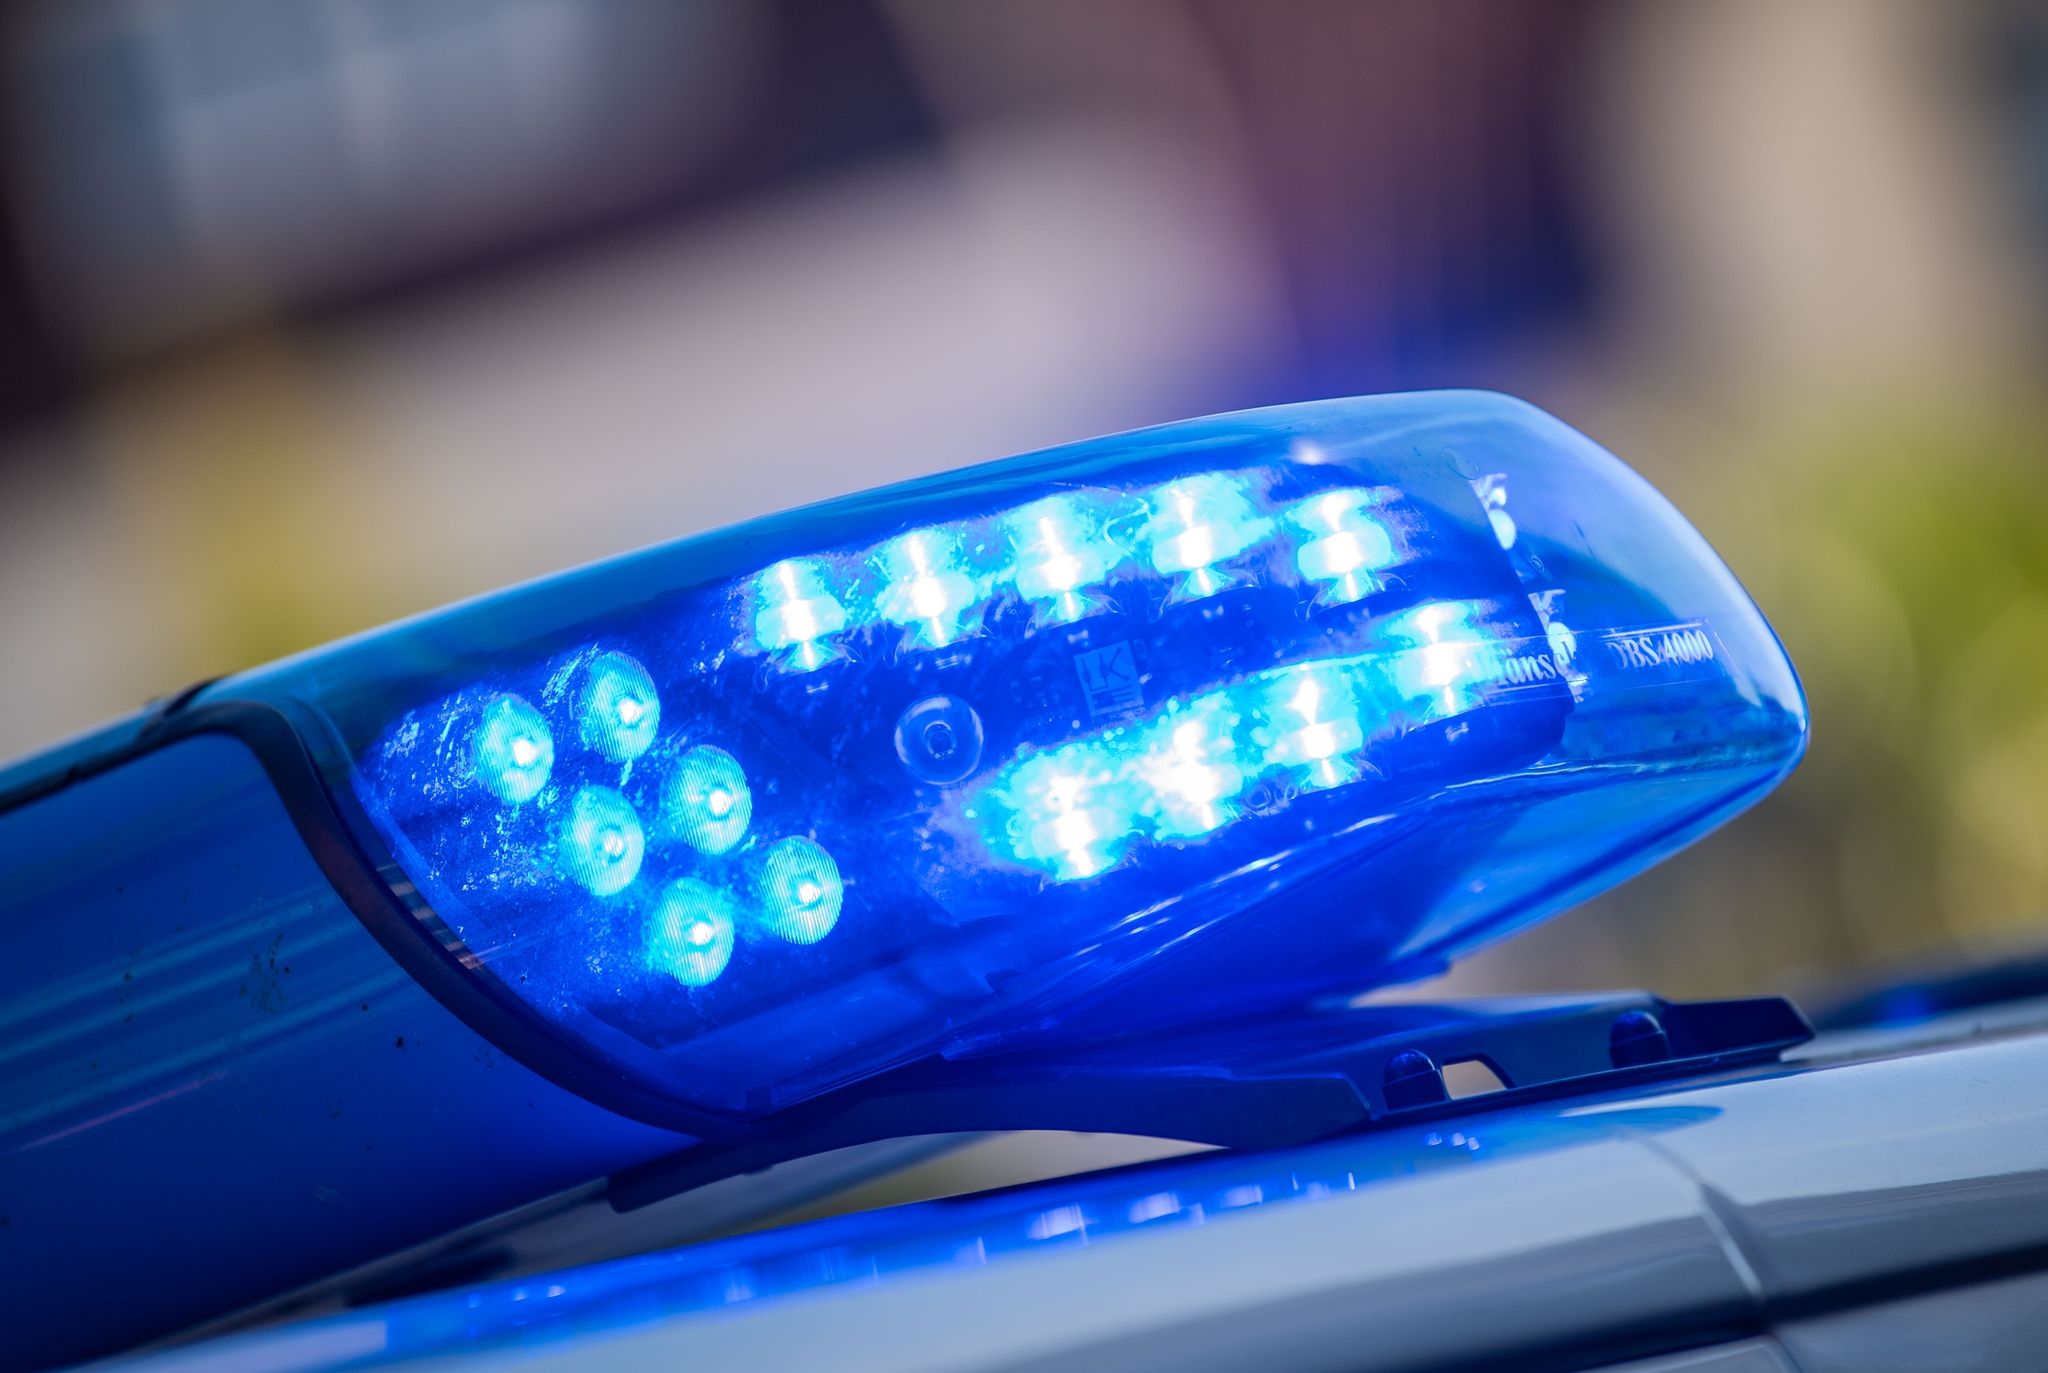 Frau in Geschäft nahe dem Bodensee getötet – Festnahme